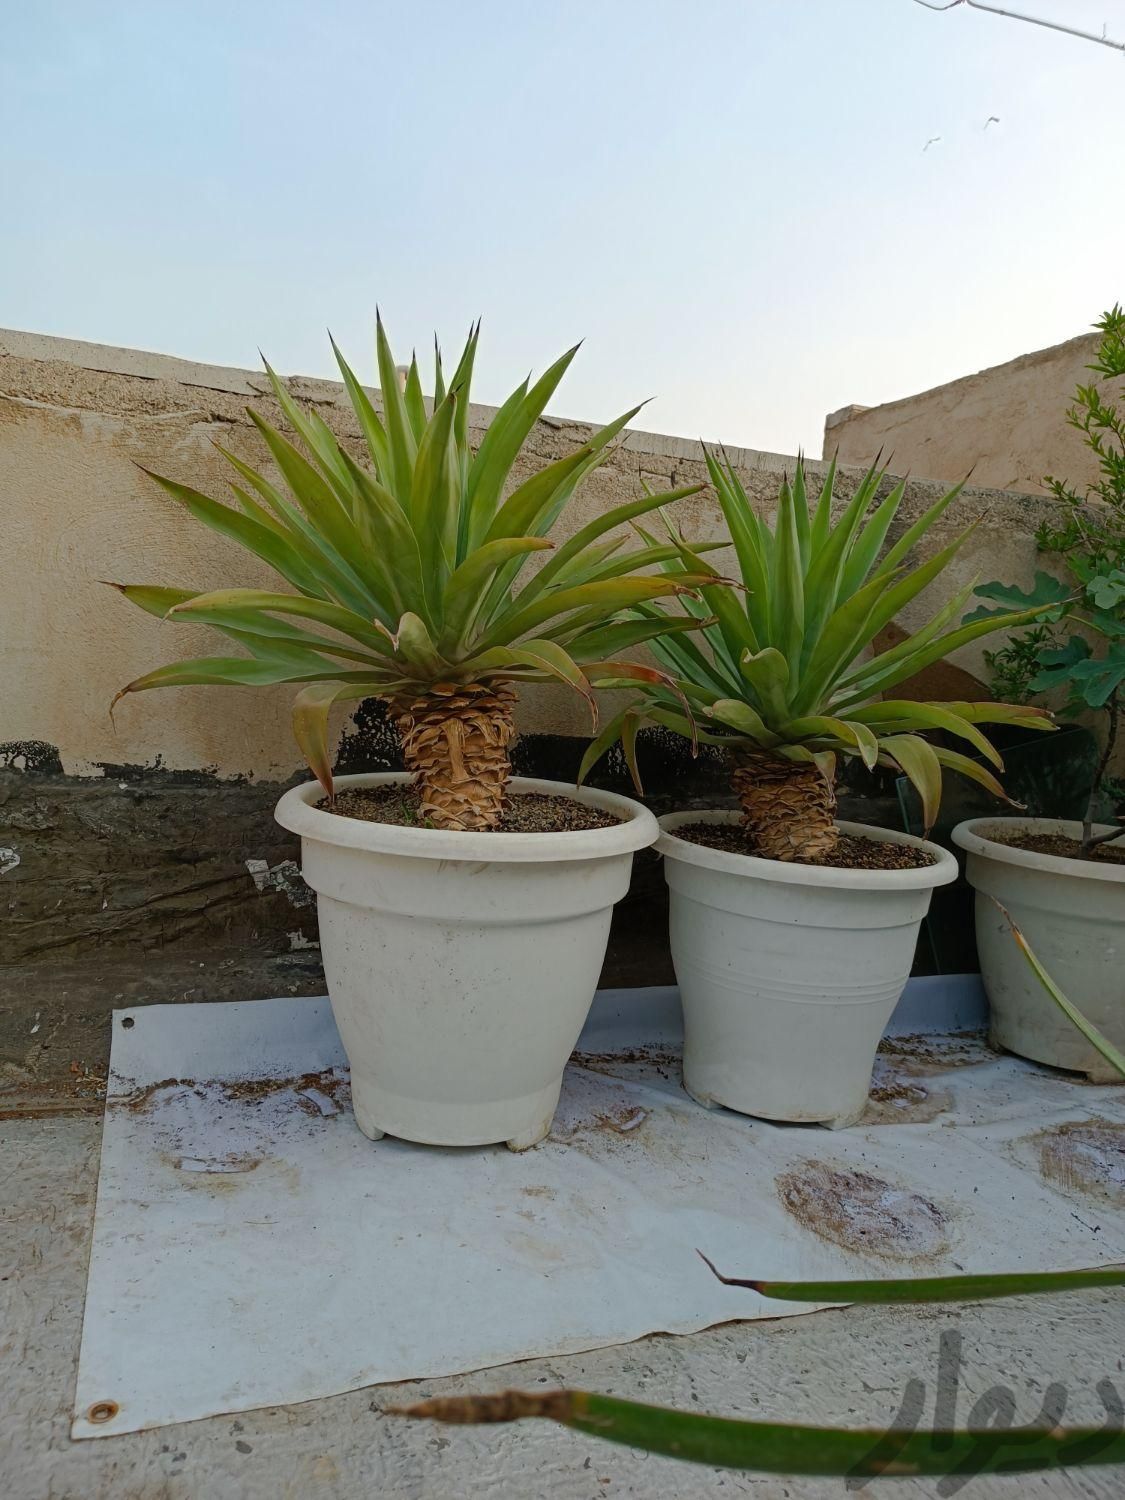 کاکتوس آگاو سن و سال دار سایز بزرگ|گل و گیاه طبیعی|تهران, مسعودیه|دیوار